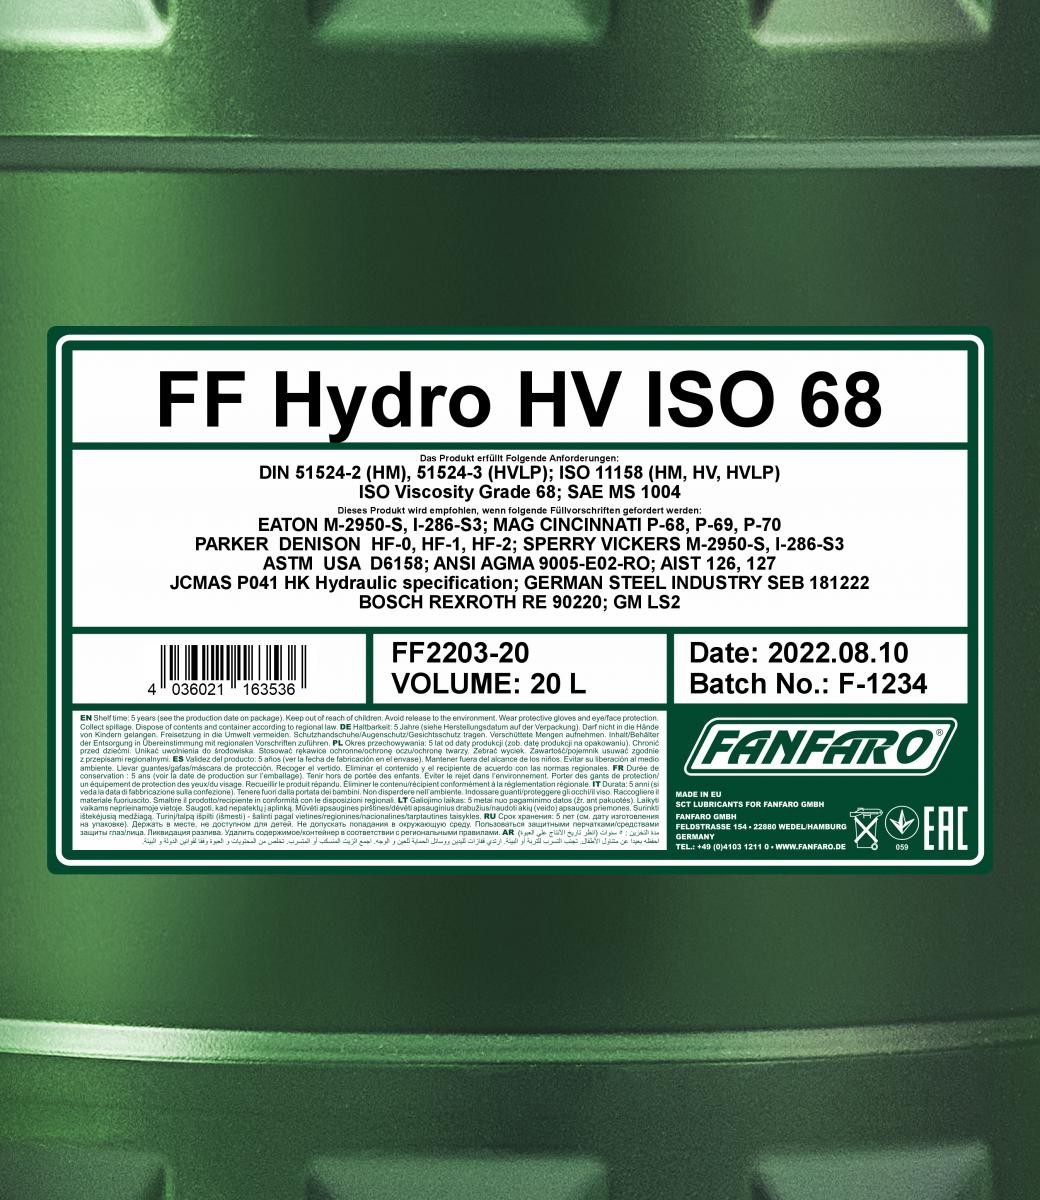 FANFARO Hydraulic fluid FF2203-20